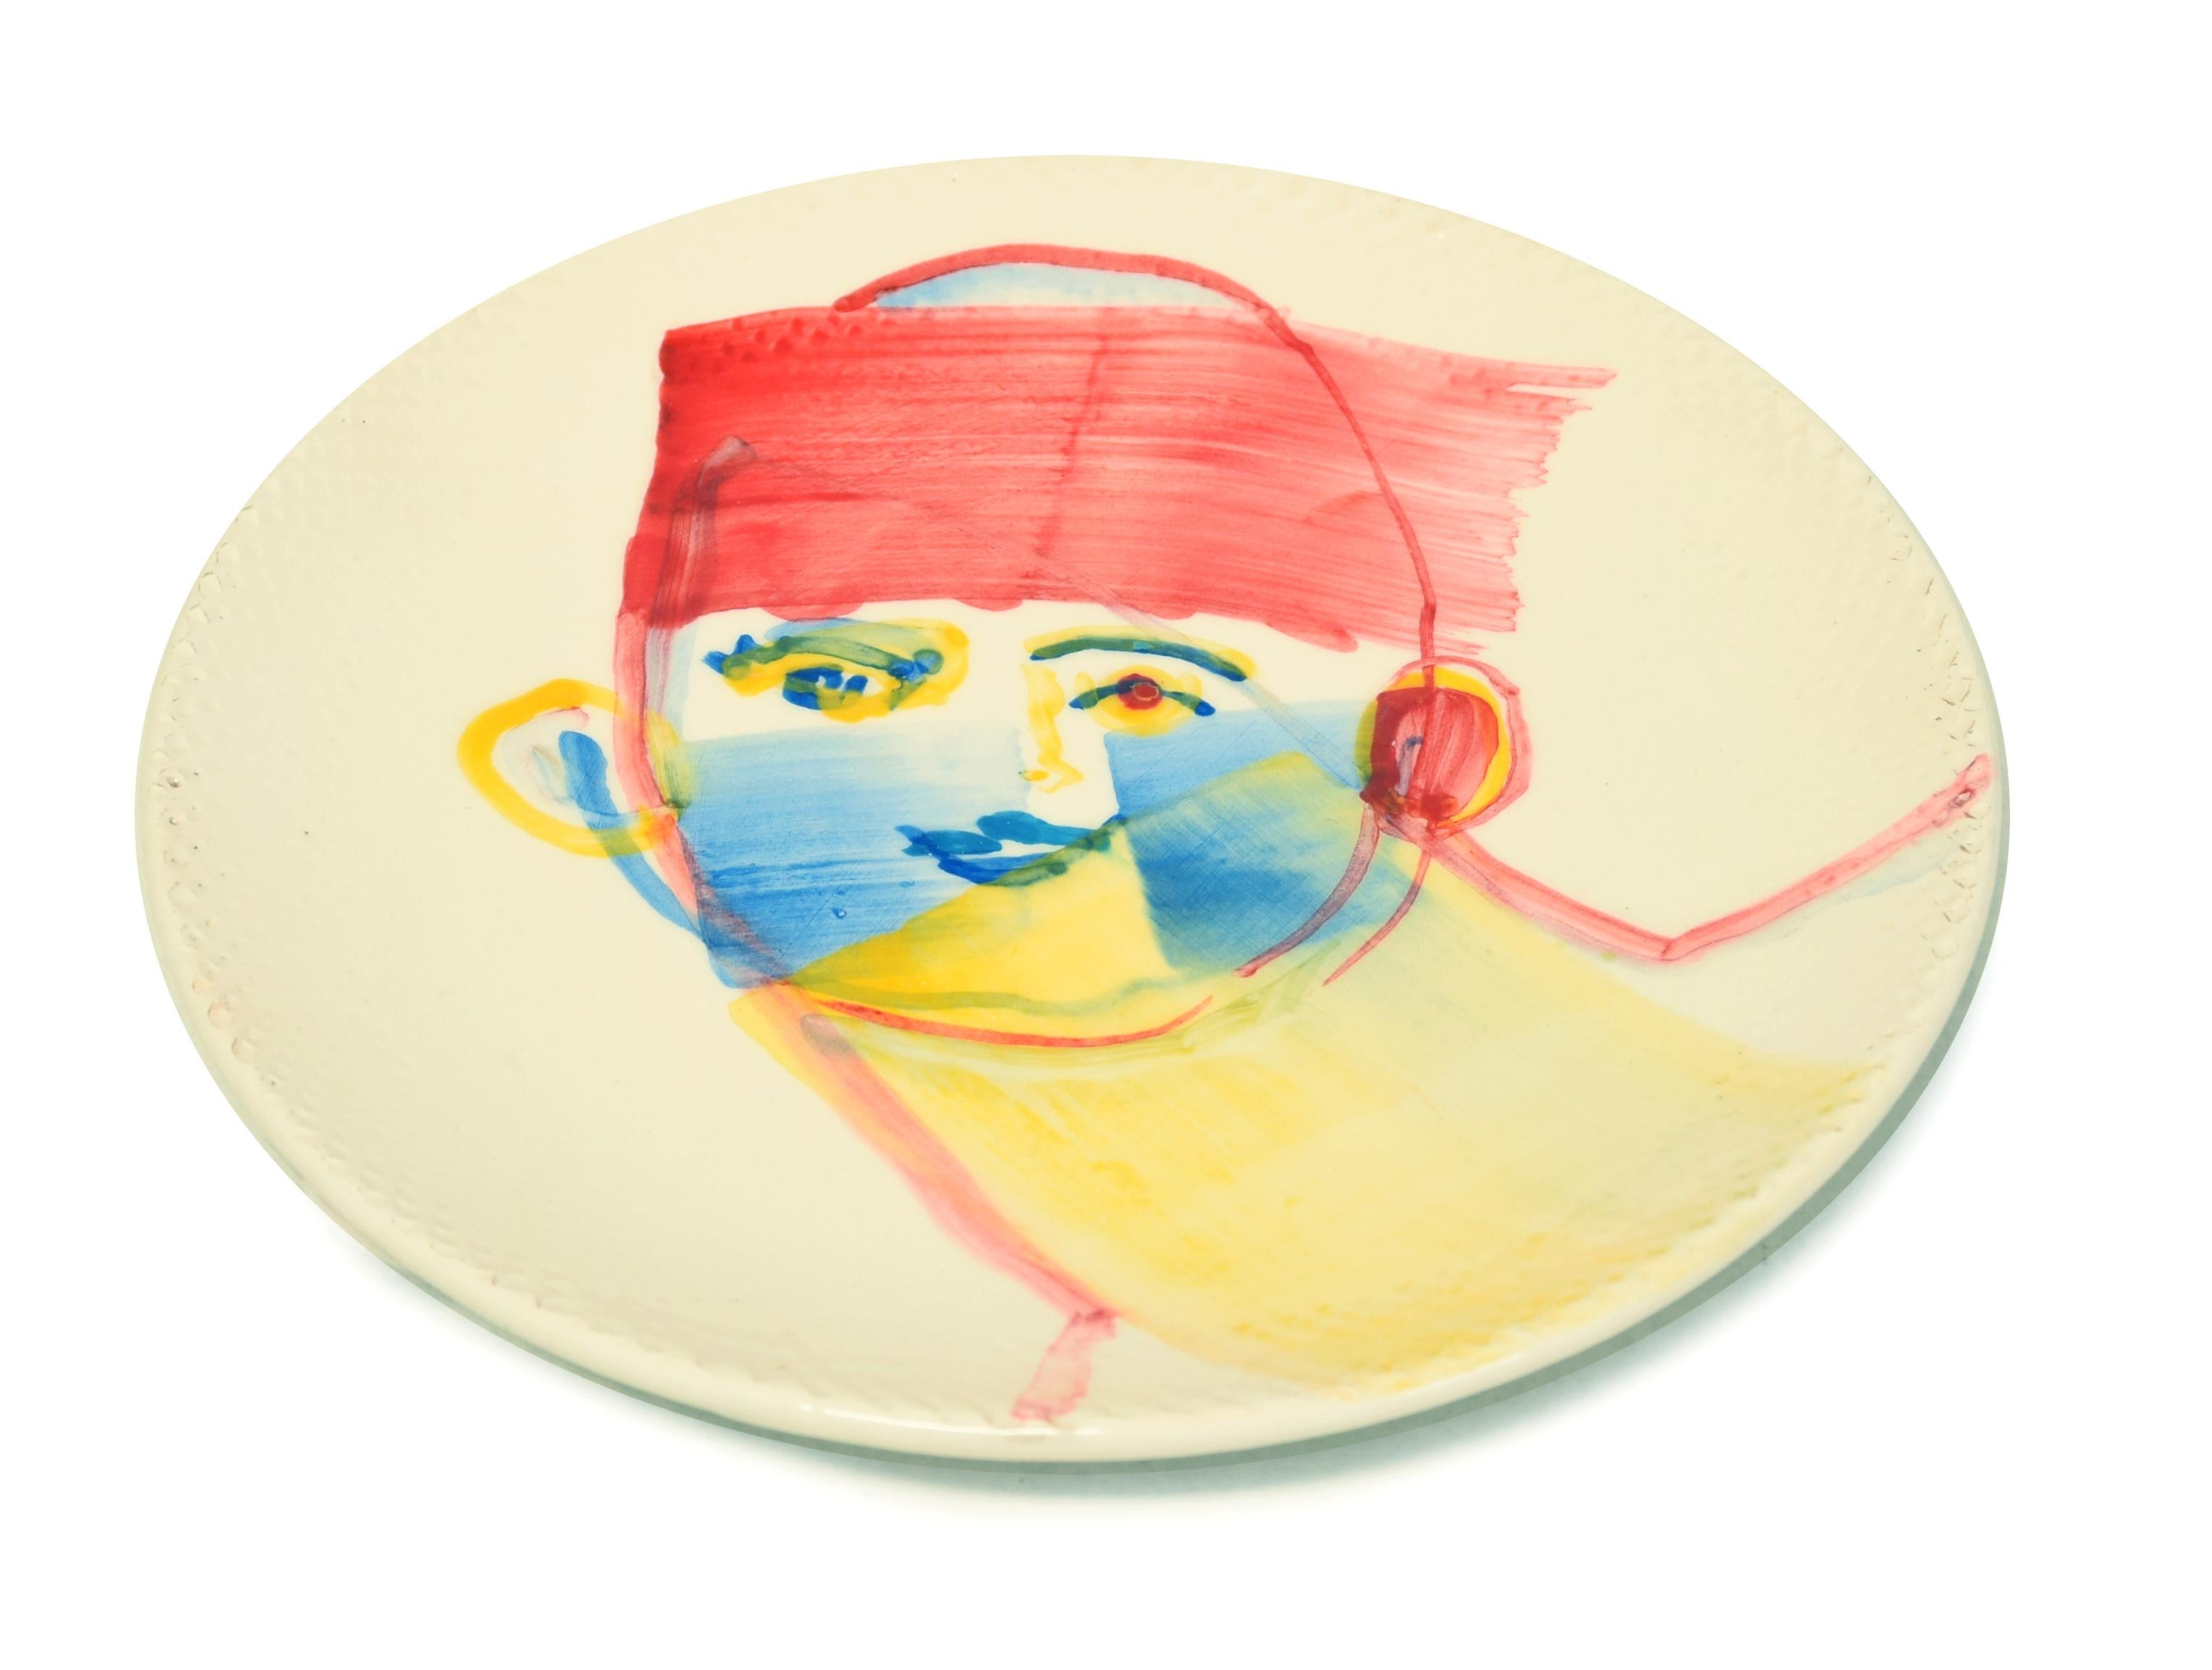 L'homme chinois - Original  Plat plat en céramique fait à la main par A. Kurakina - 2019 - Contemporain Art par Anastasia Kurakina